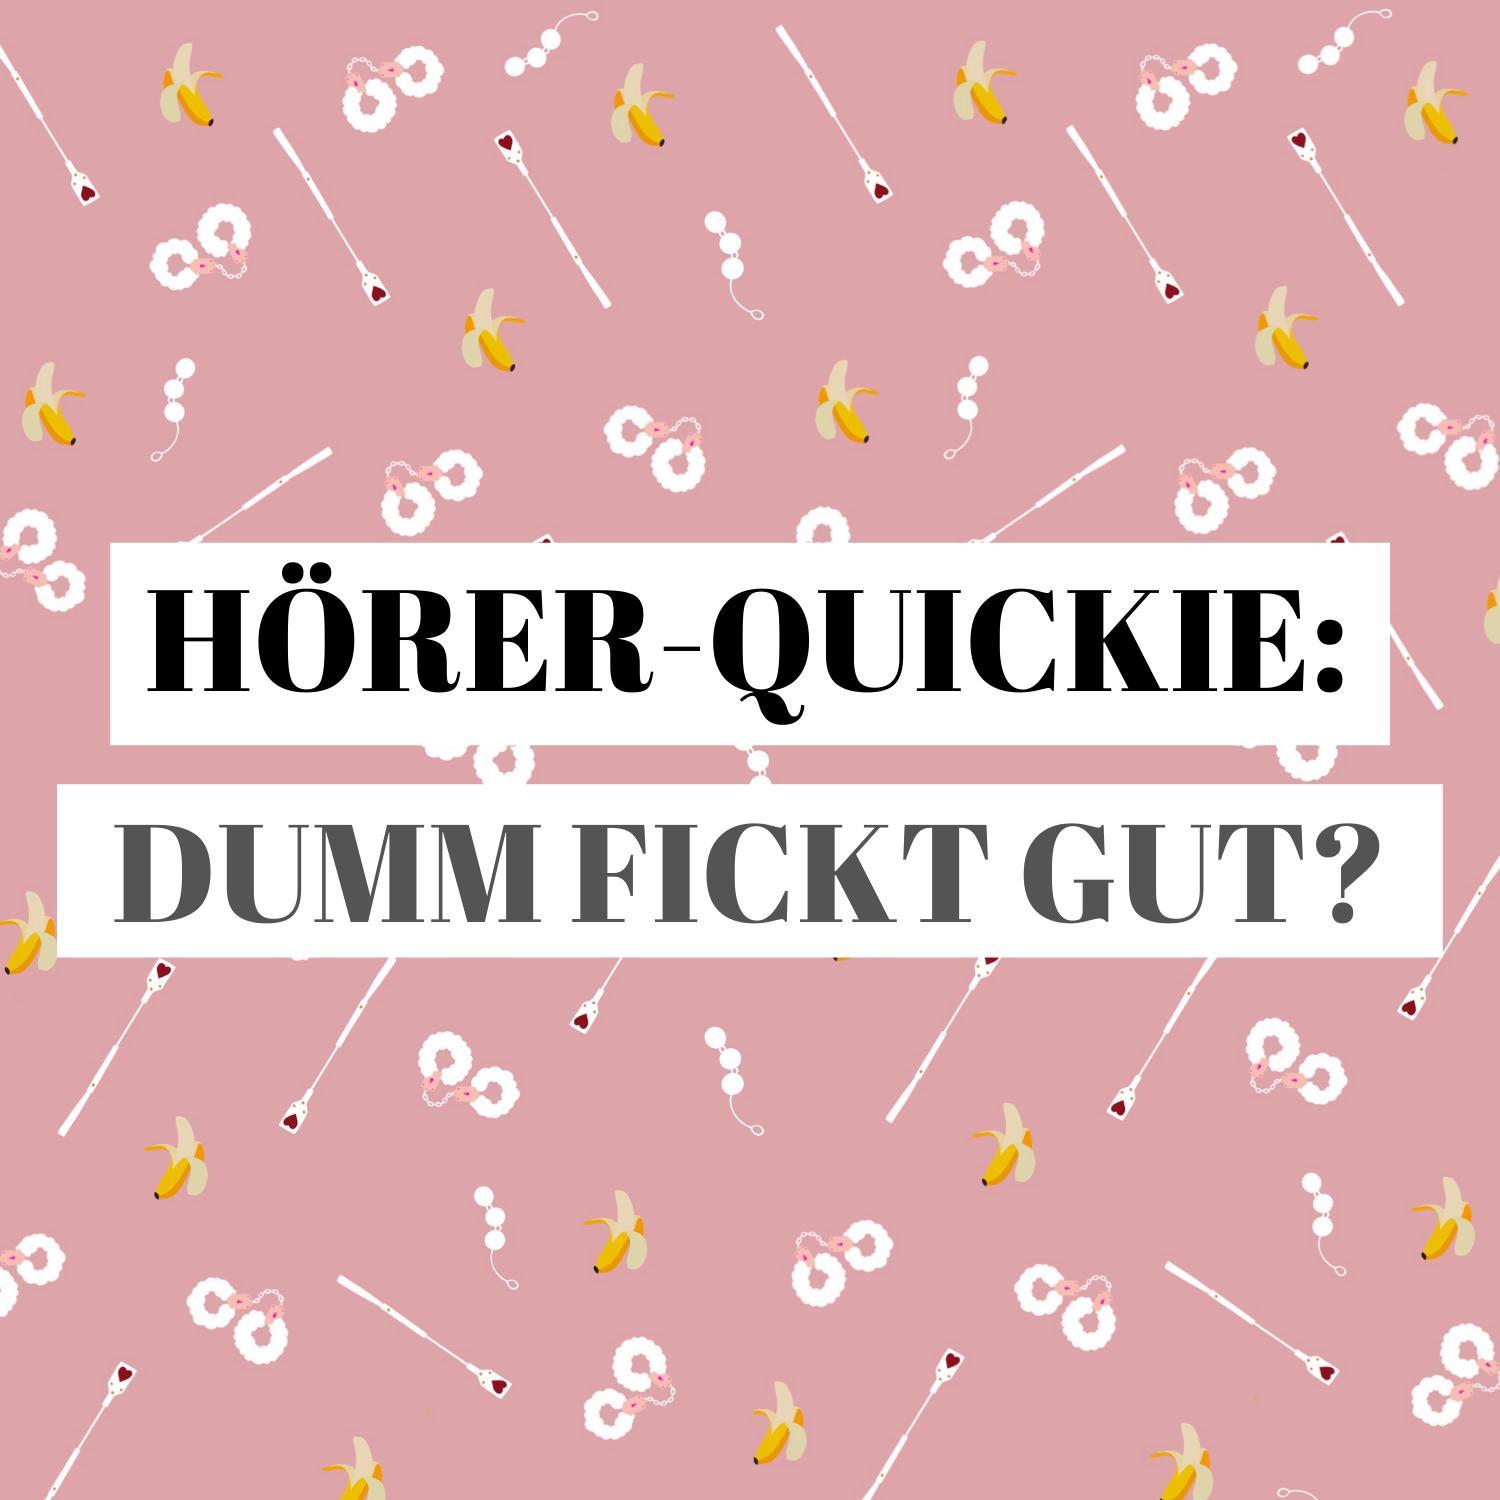 Quickie: Dumm f***t gut